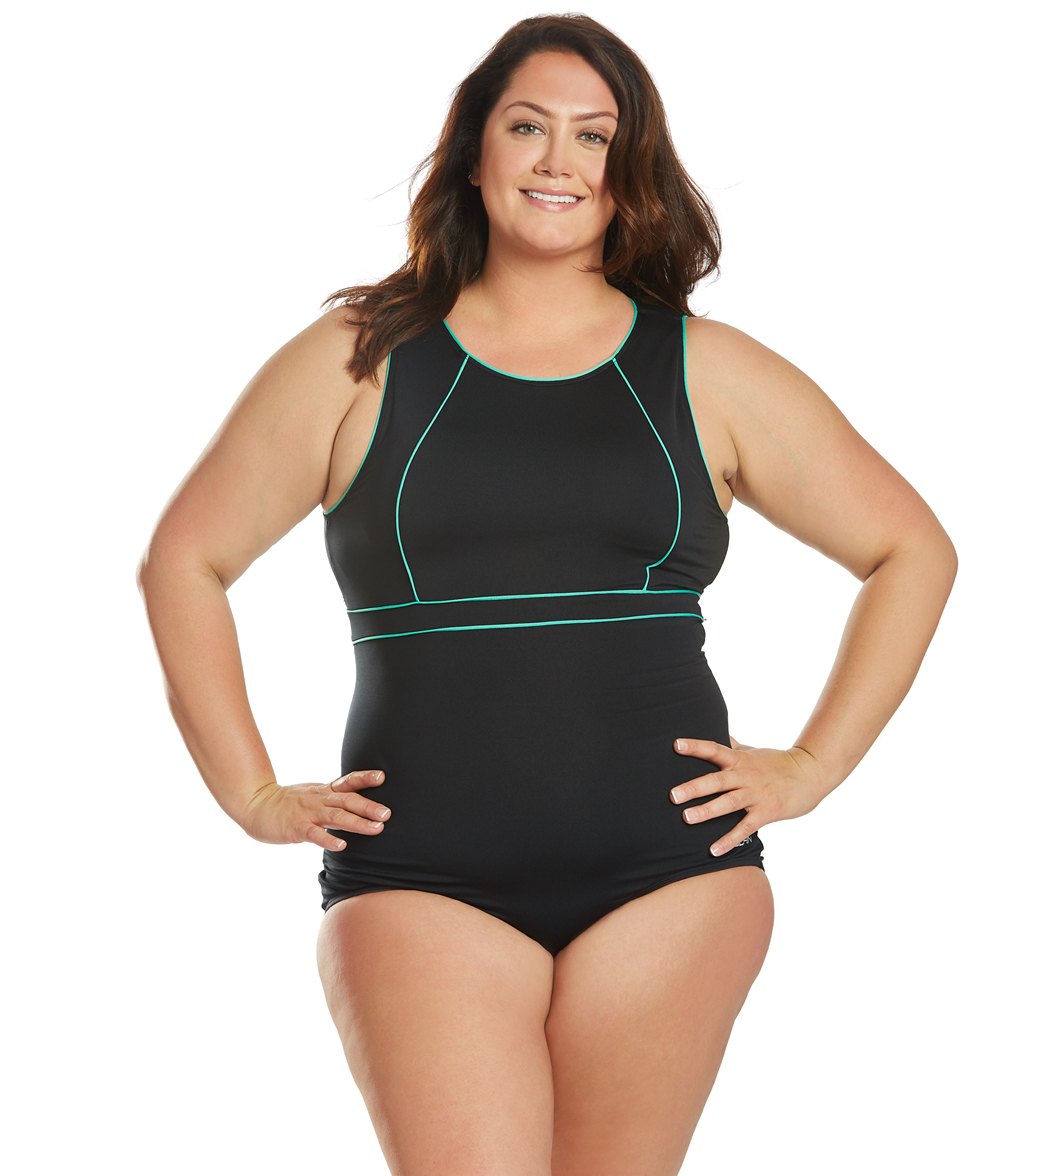 Dolfin Women's Plus Size Aquashape Solid Conservative High Neck Chlorine Resistant One Piece Swimsuit - Black/Mint 16 - Swimoutlet.com